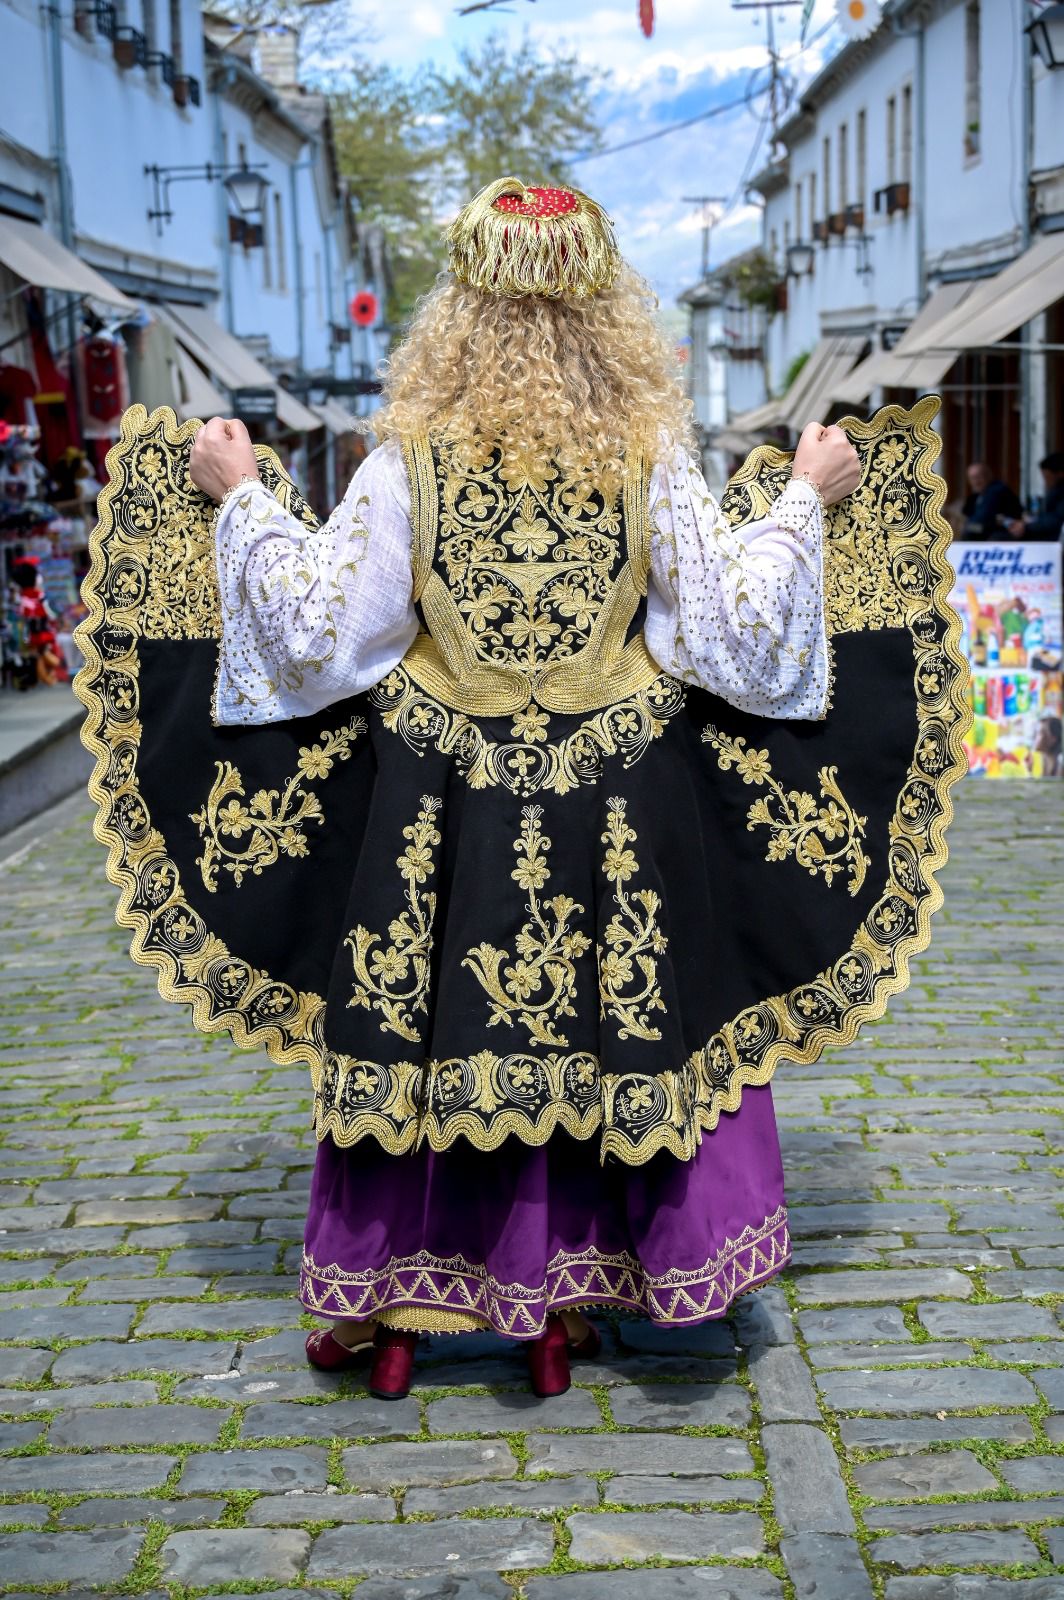 Arbëror Lizeta es un creador especializado en la reproducción de trajes tradicionales albaneses con métodos artesanales, centrándose en la preservación y promoción del patrimonio cultural del país. 